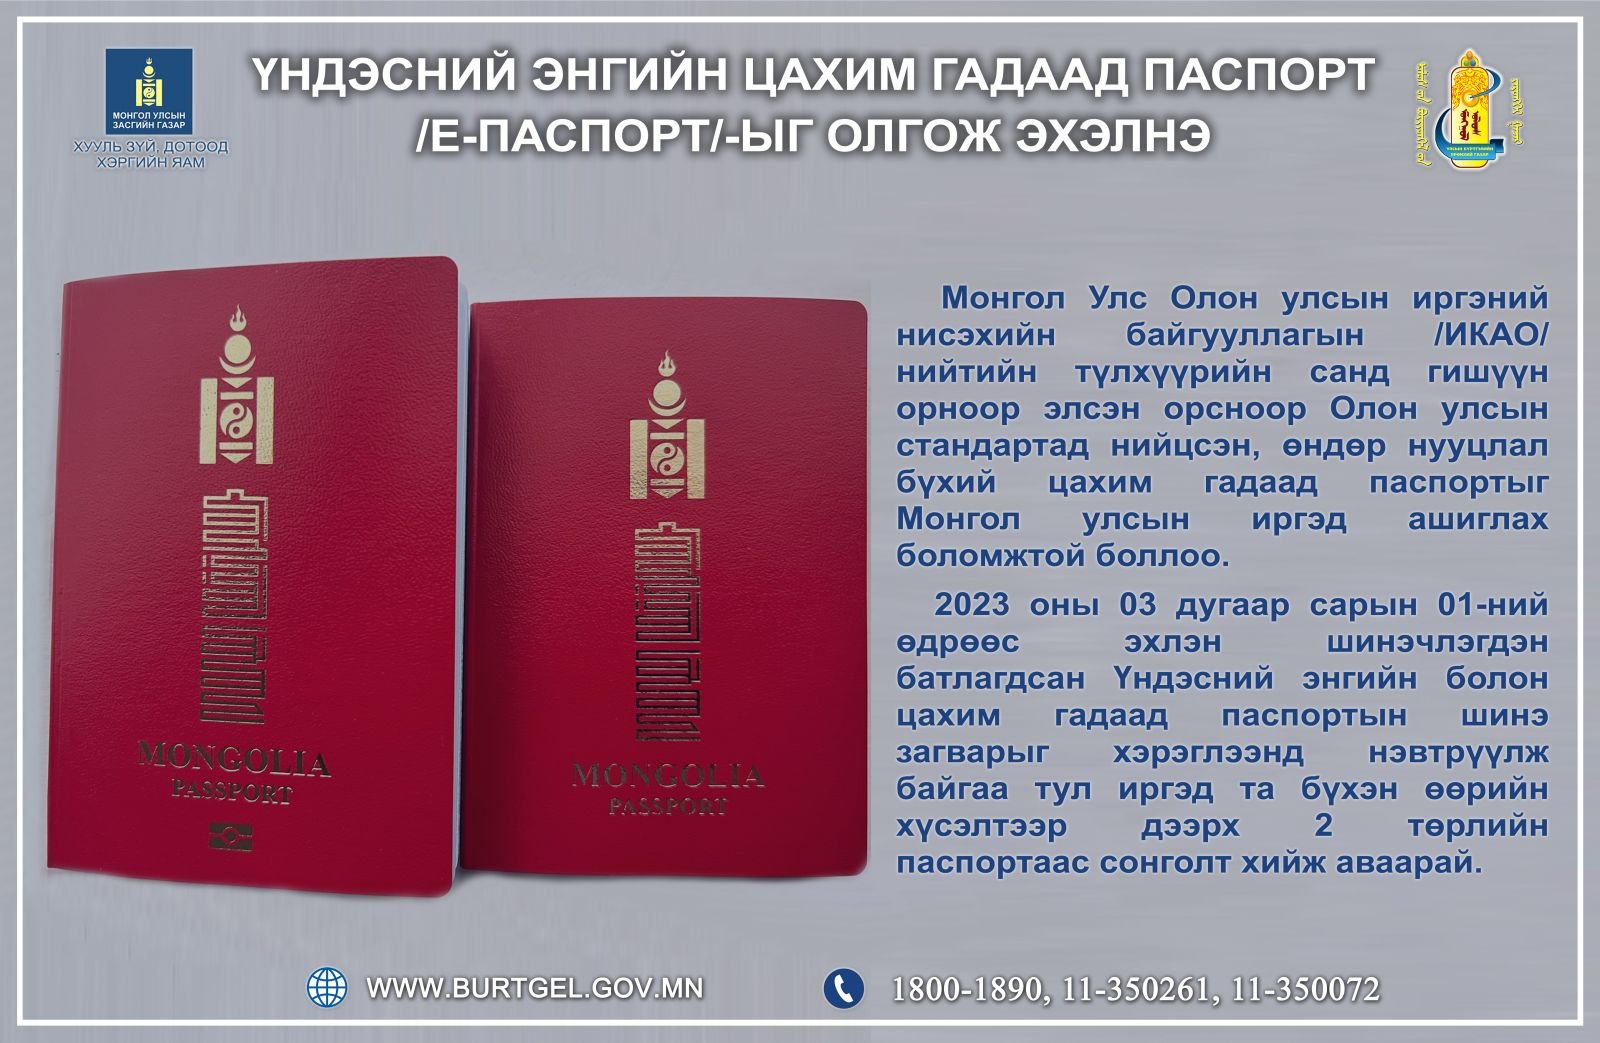 Үндэсний энгийн цахим гадаад паспорт /е-паспорт/-ыг олгож эхэлнэ